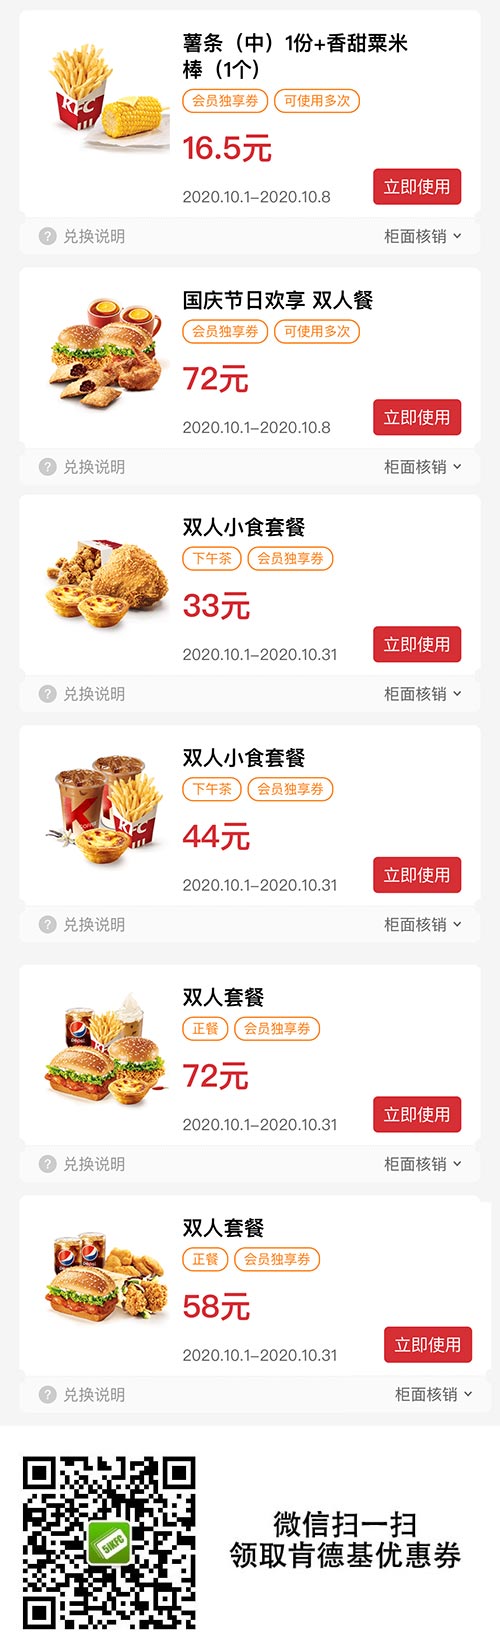 肯德基优惠券2020年10月版本，国庆双人餐优惠价72元 小食餐33元起